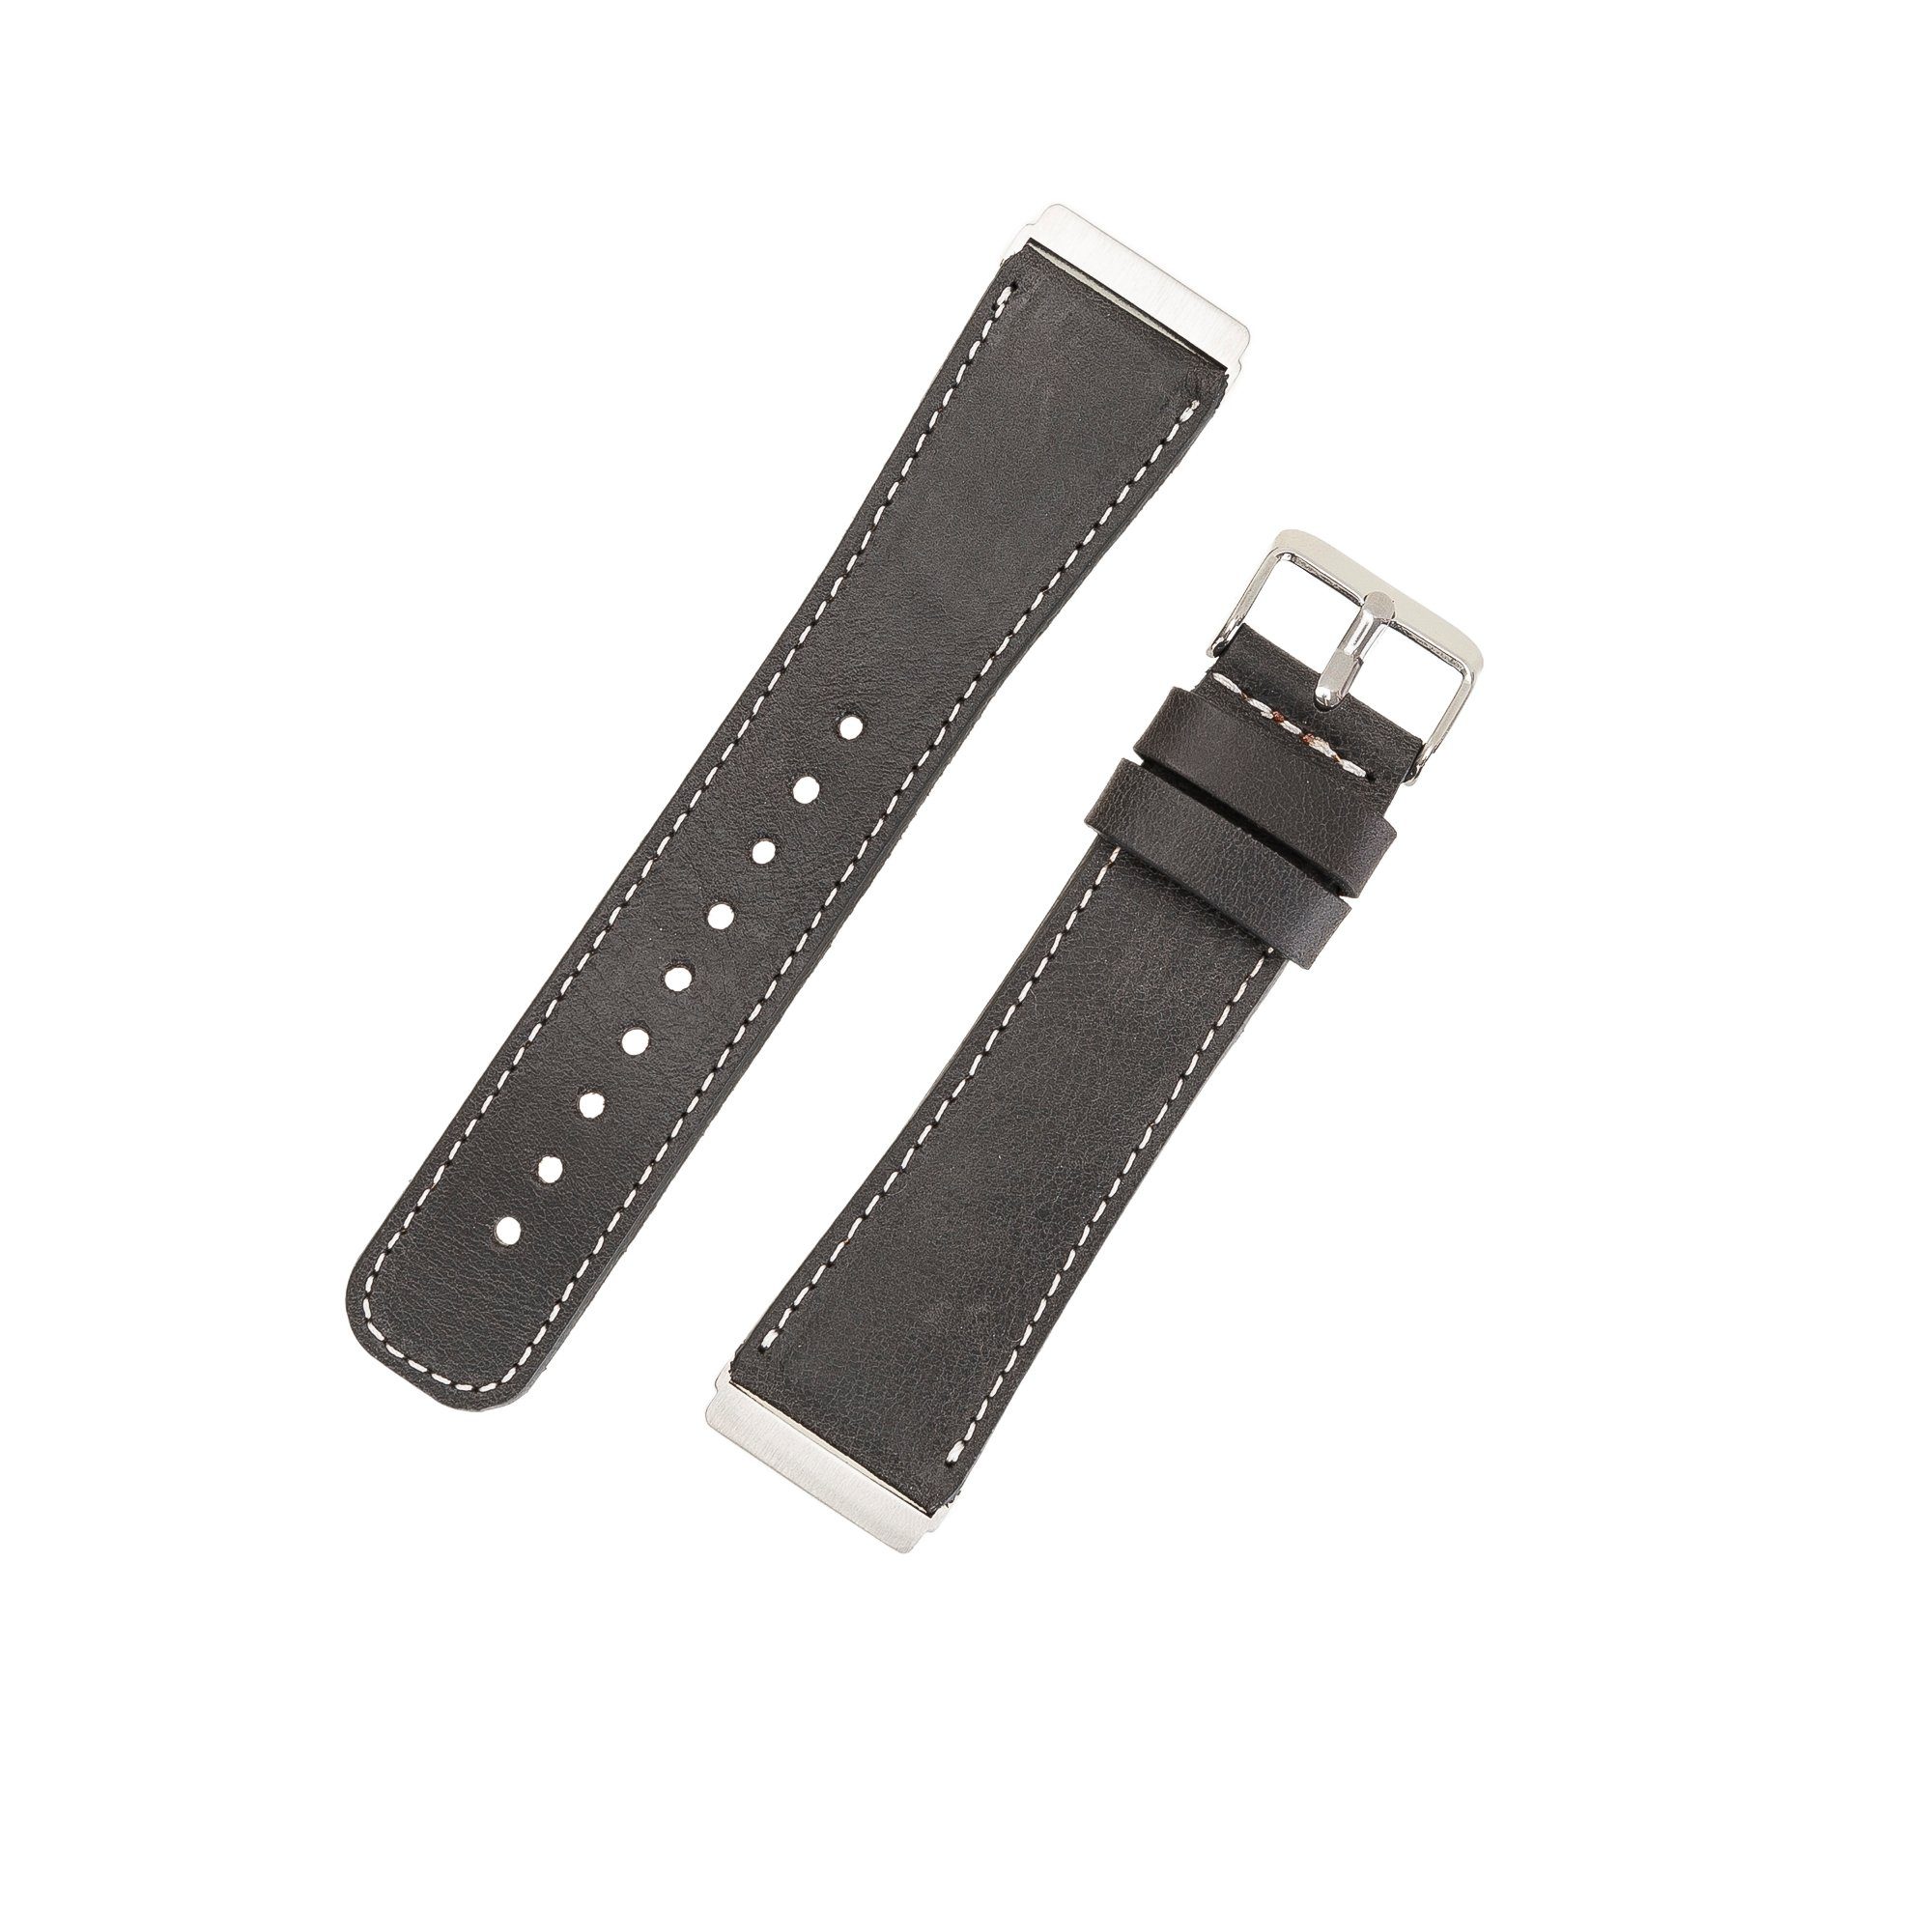 / Versa Sense Leder Leather Ersatzarmband 4 Fitbit 2 3 Renna / & Armband Dunkelgrau Smartwatch-Armband Echtes